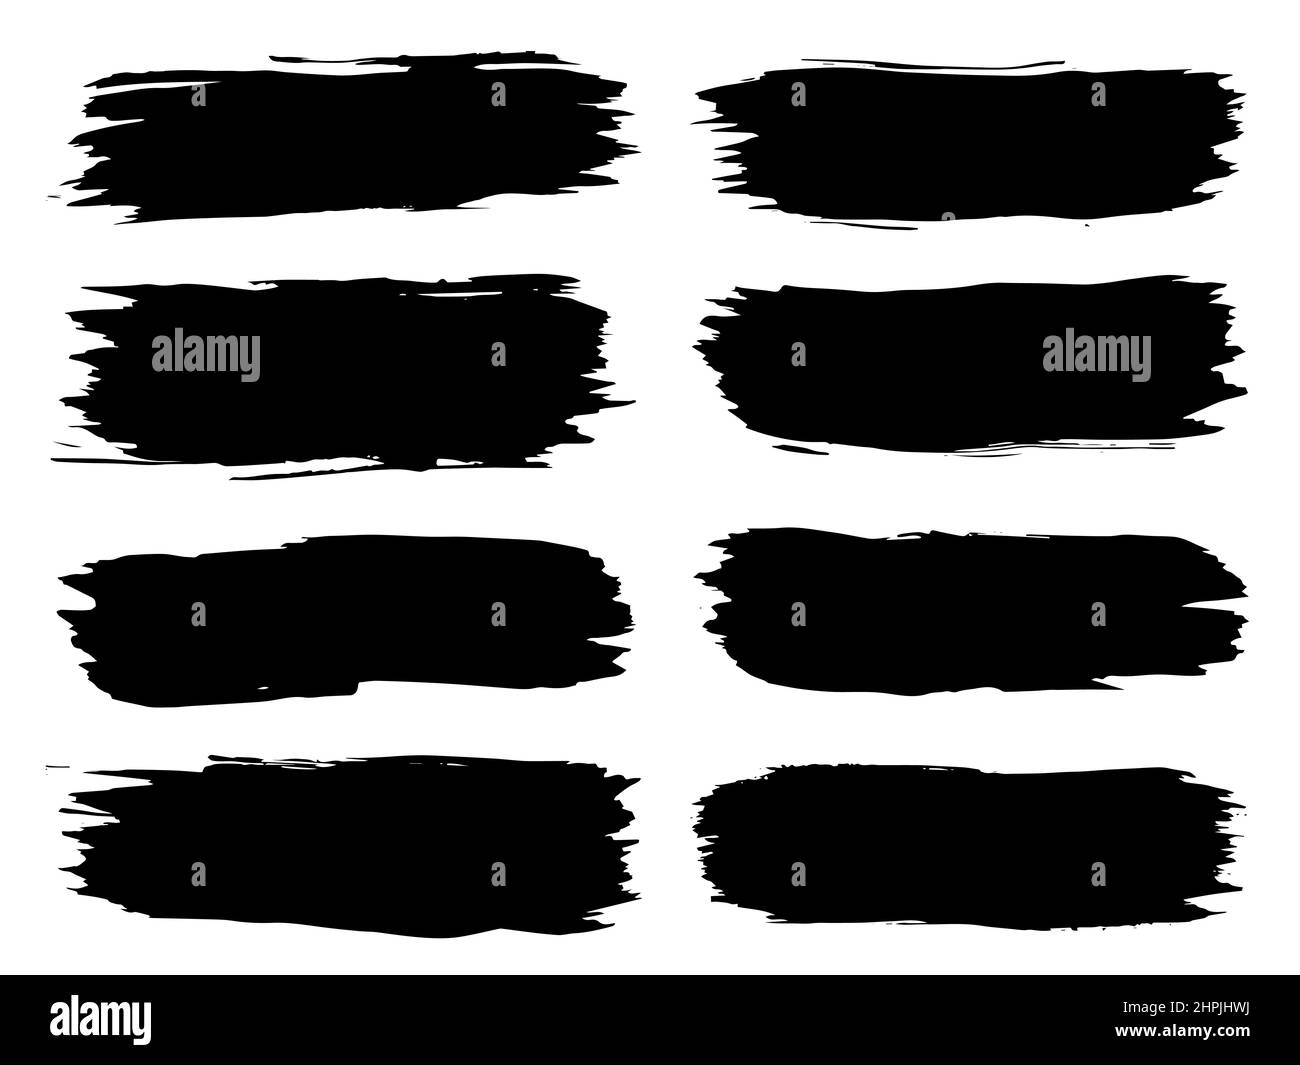 Collection de peinture noire grungy artistique fait main création pinceau jeu de coups isolés sur fond blanc. illustration 3d d'un groupe de gru abstrait Banque D'Images